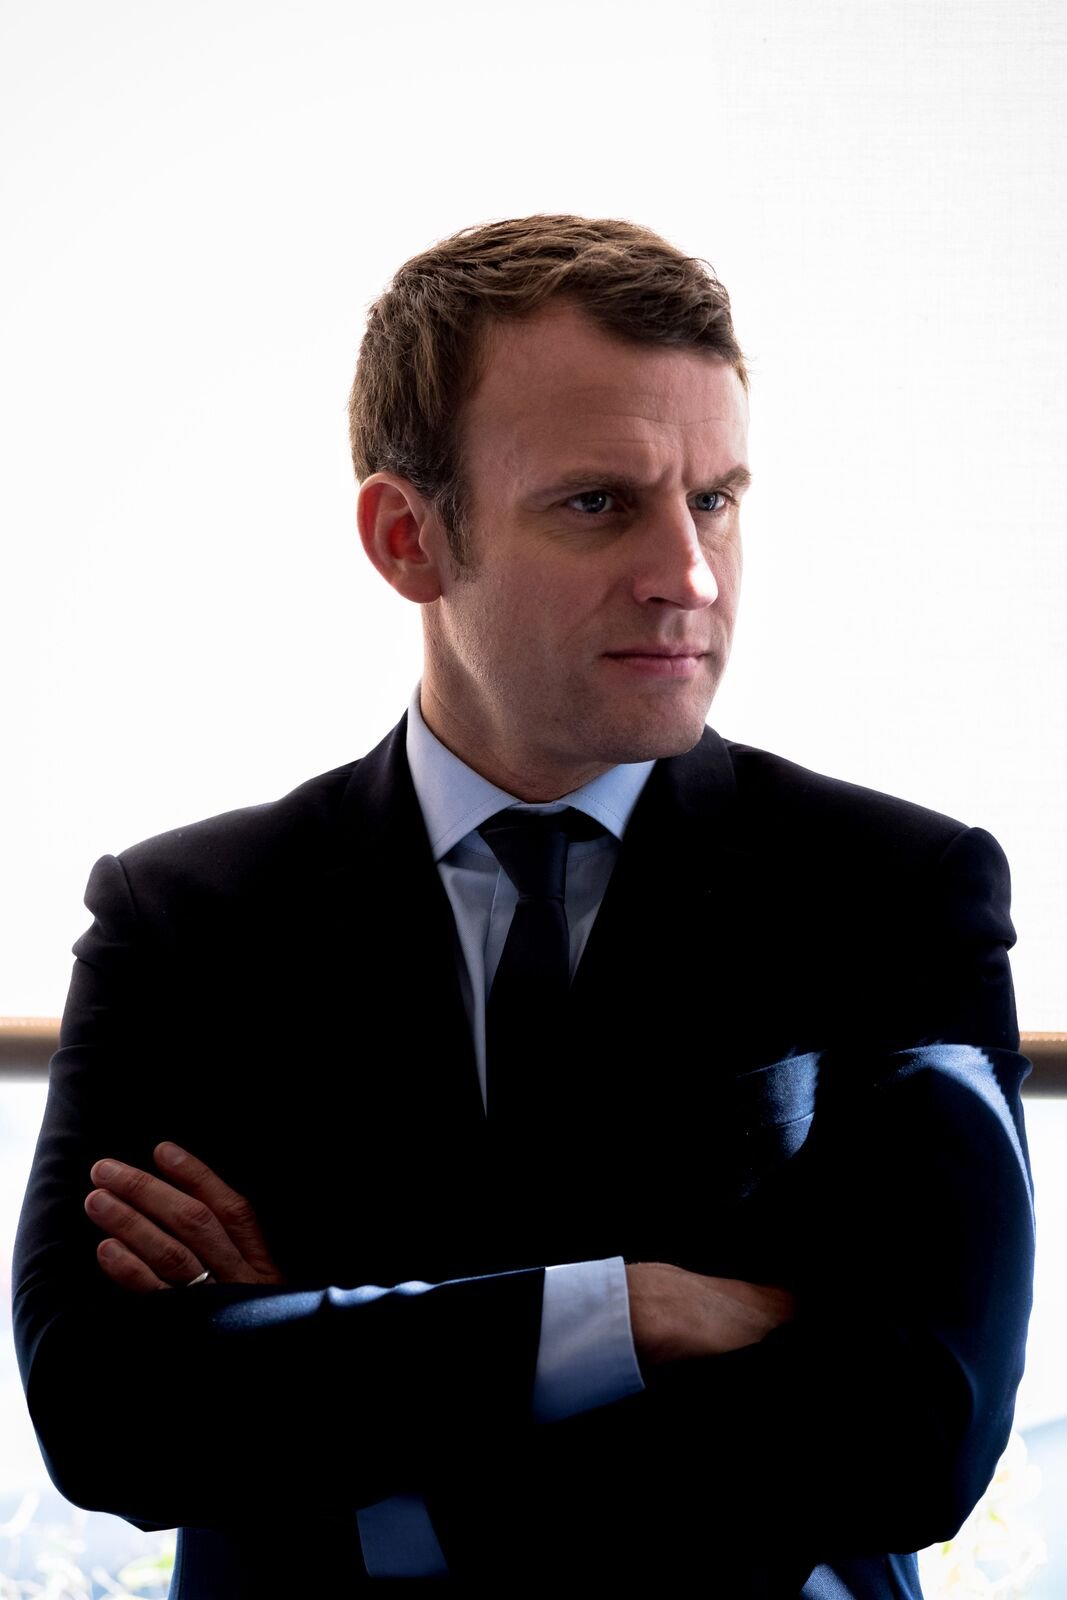 Le president de la république Francaise en croisé le bas. | Photo : GettyImage